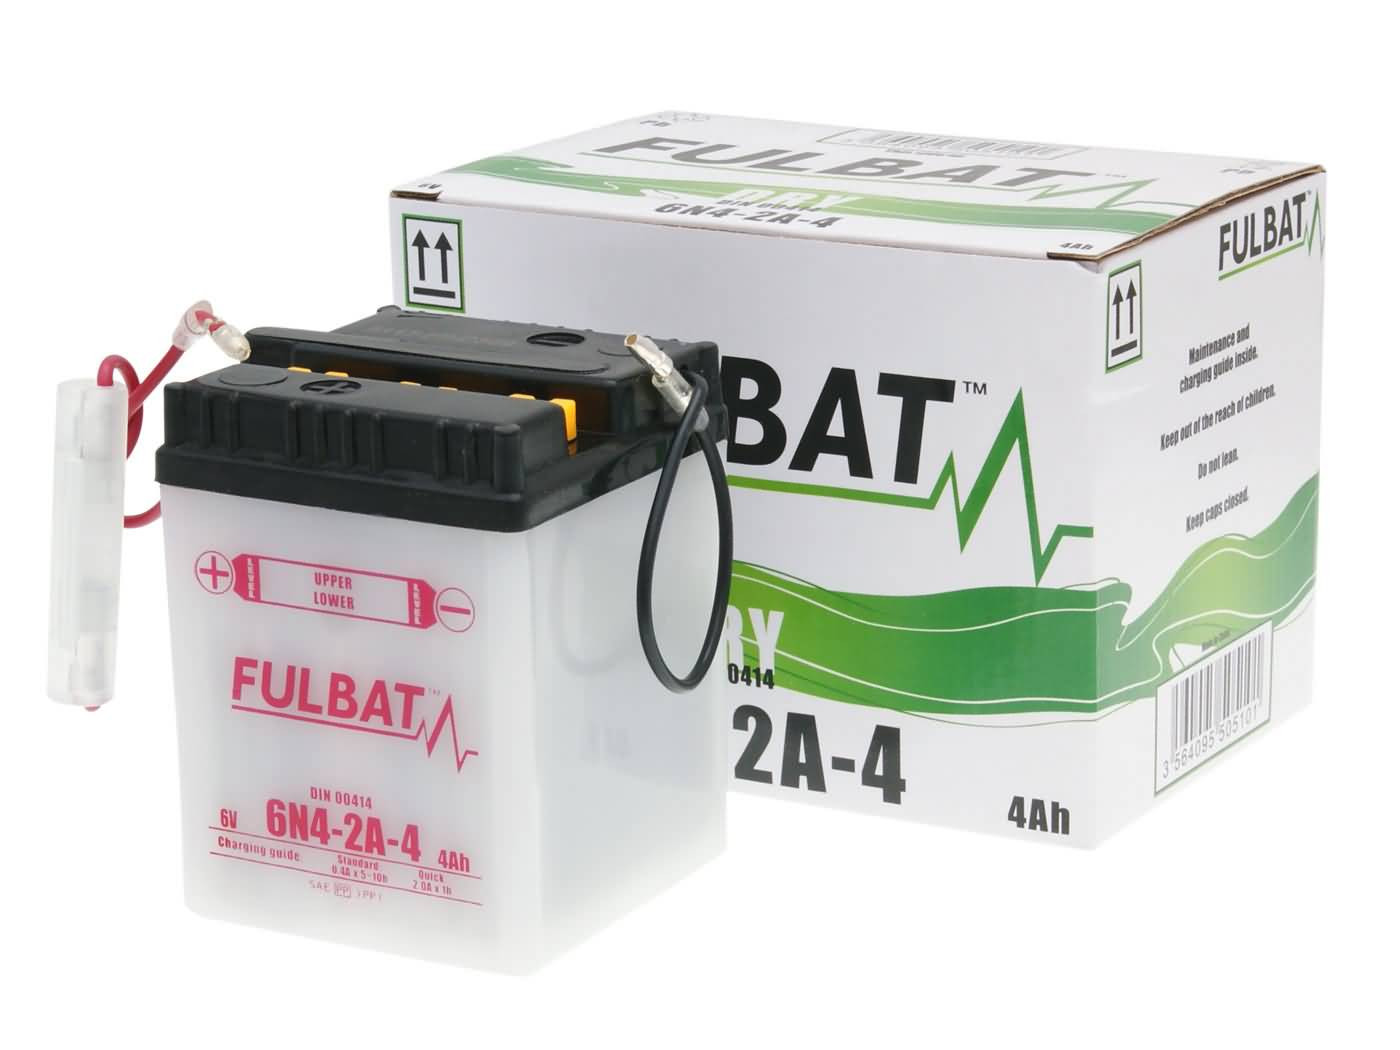 Fulbat 6V 6N4-2A-4 DRY száraz akkumulátor + savcsomag